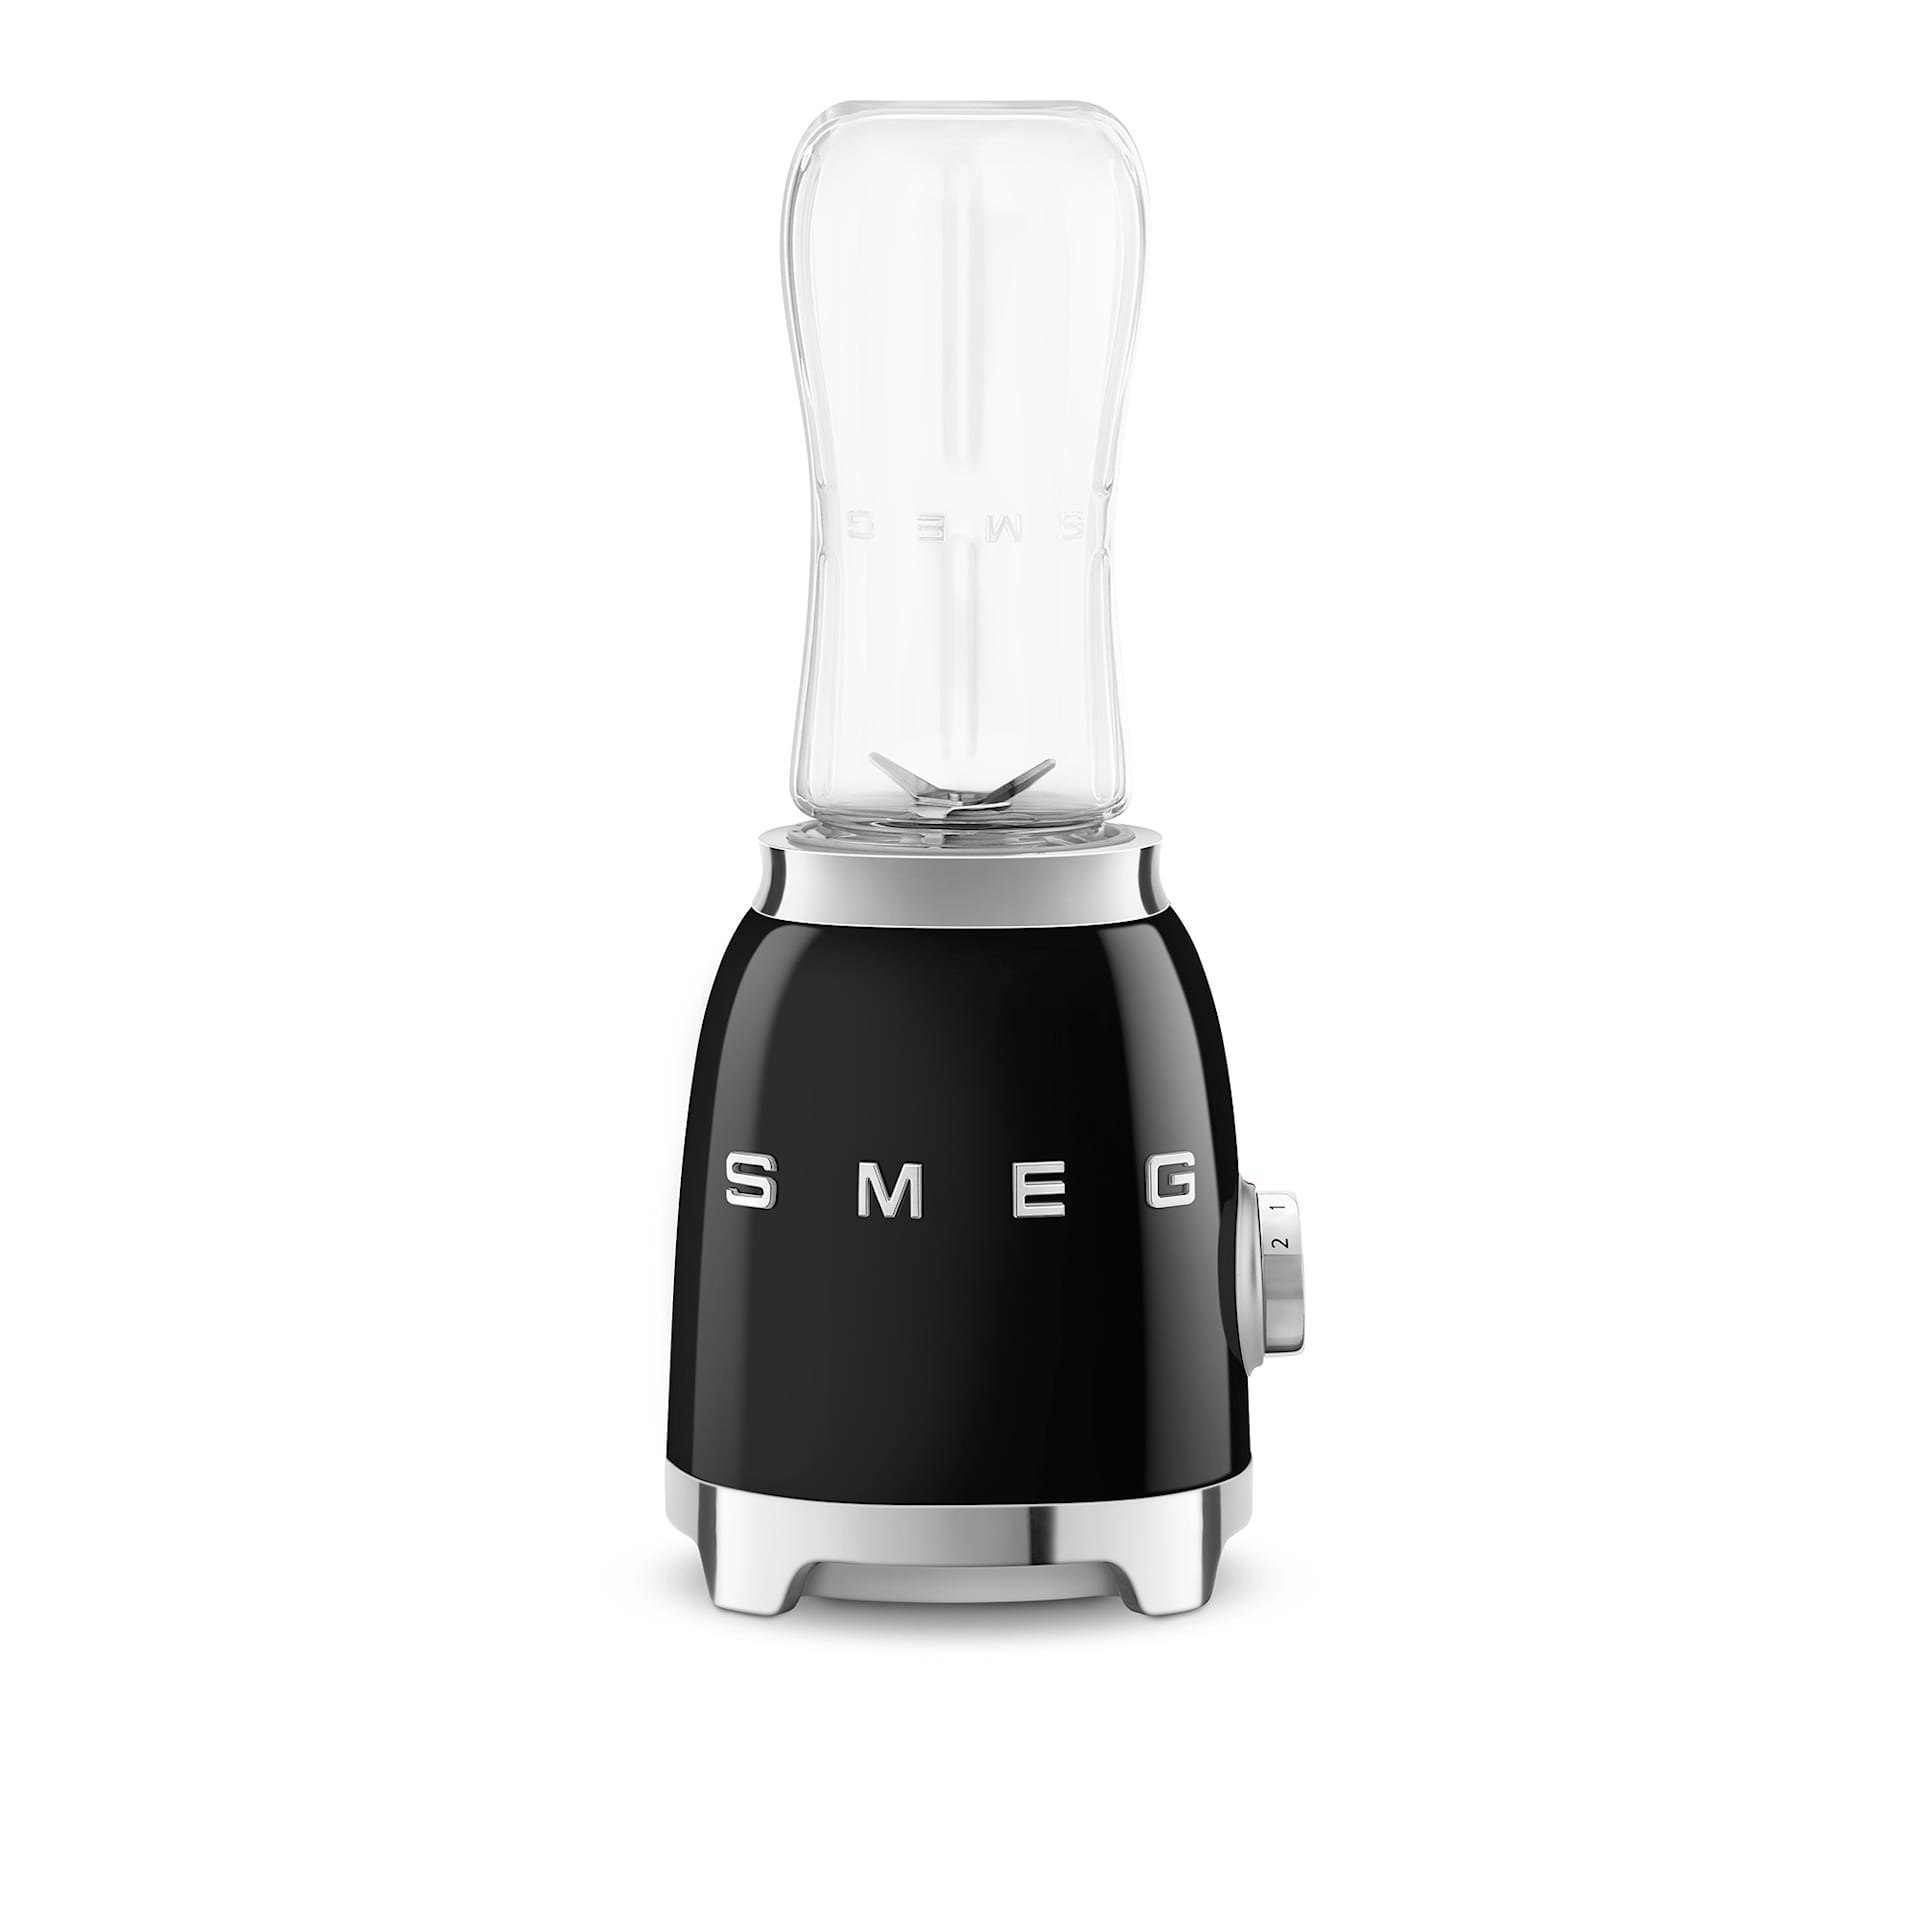 Smeg Personal Blender Black - Smeg - NO GA